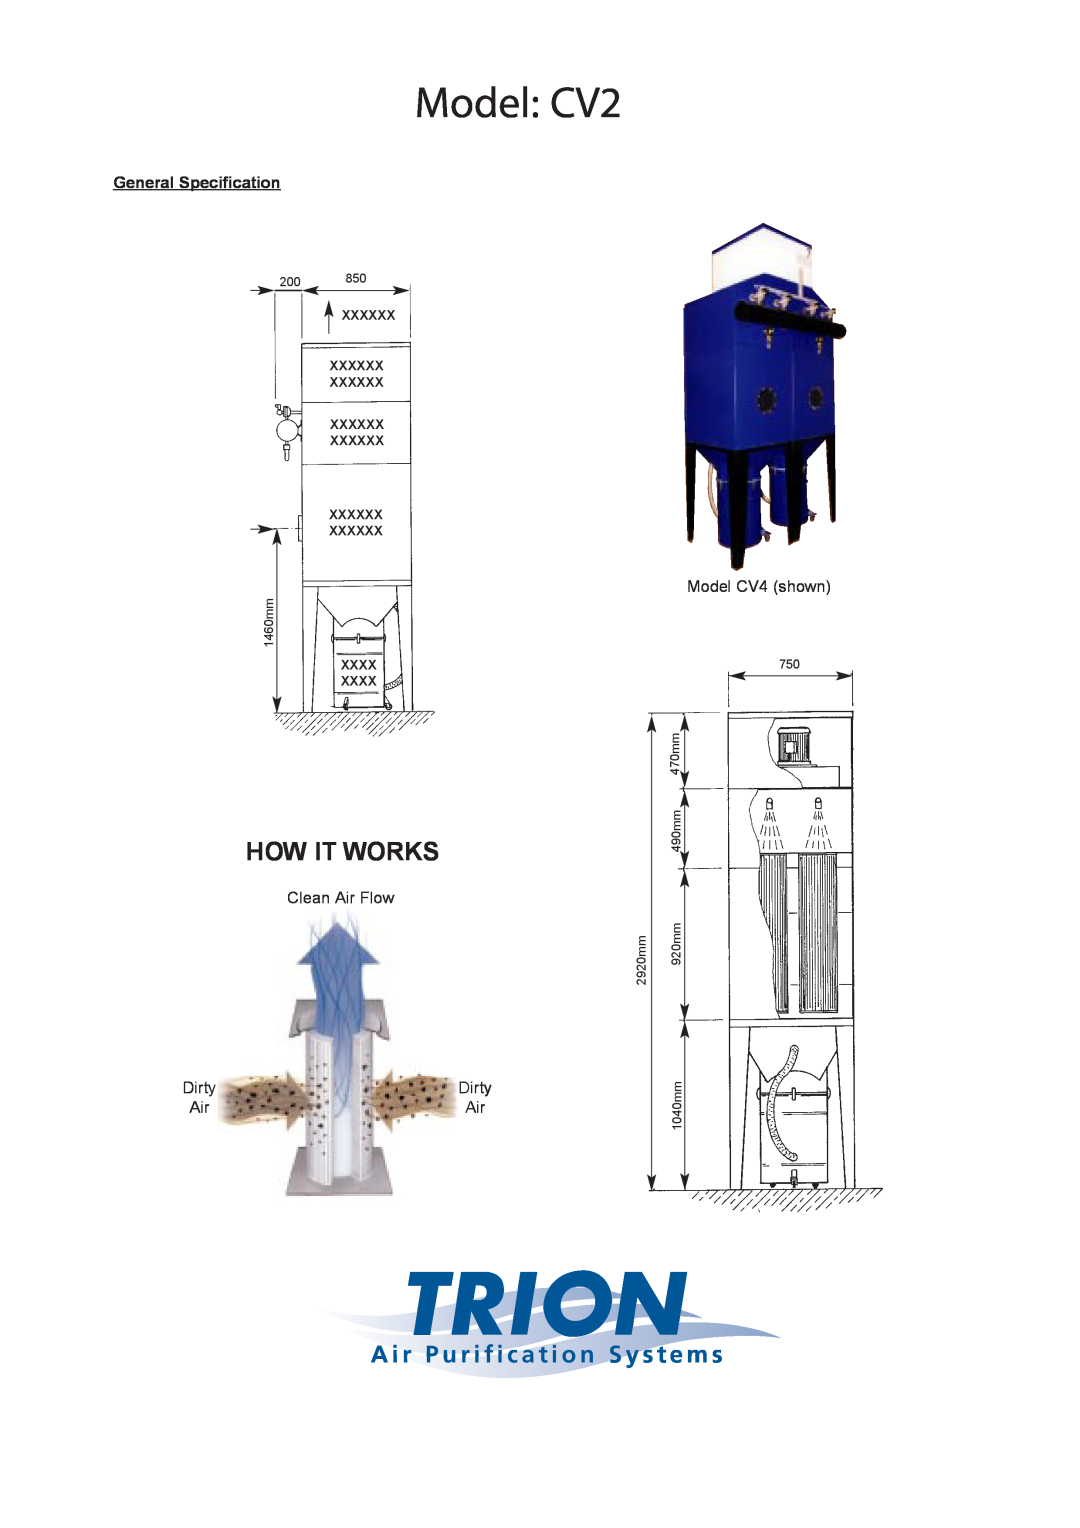 Trion CV4 Model CV2, How It Works, A i r P u r i f i c a t i o n S y s t e m s, General Specification, Clean Air Flow 